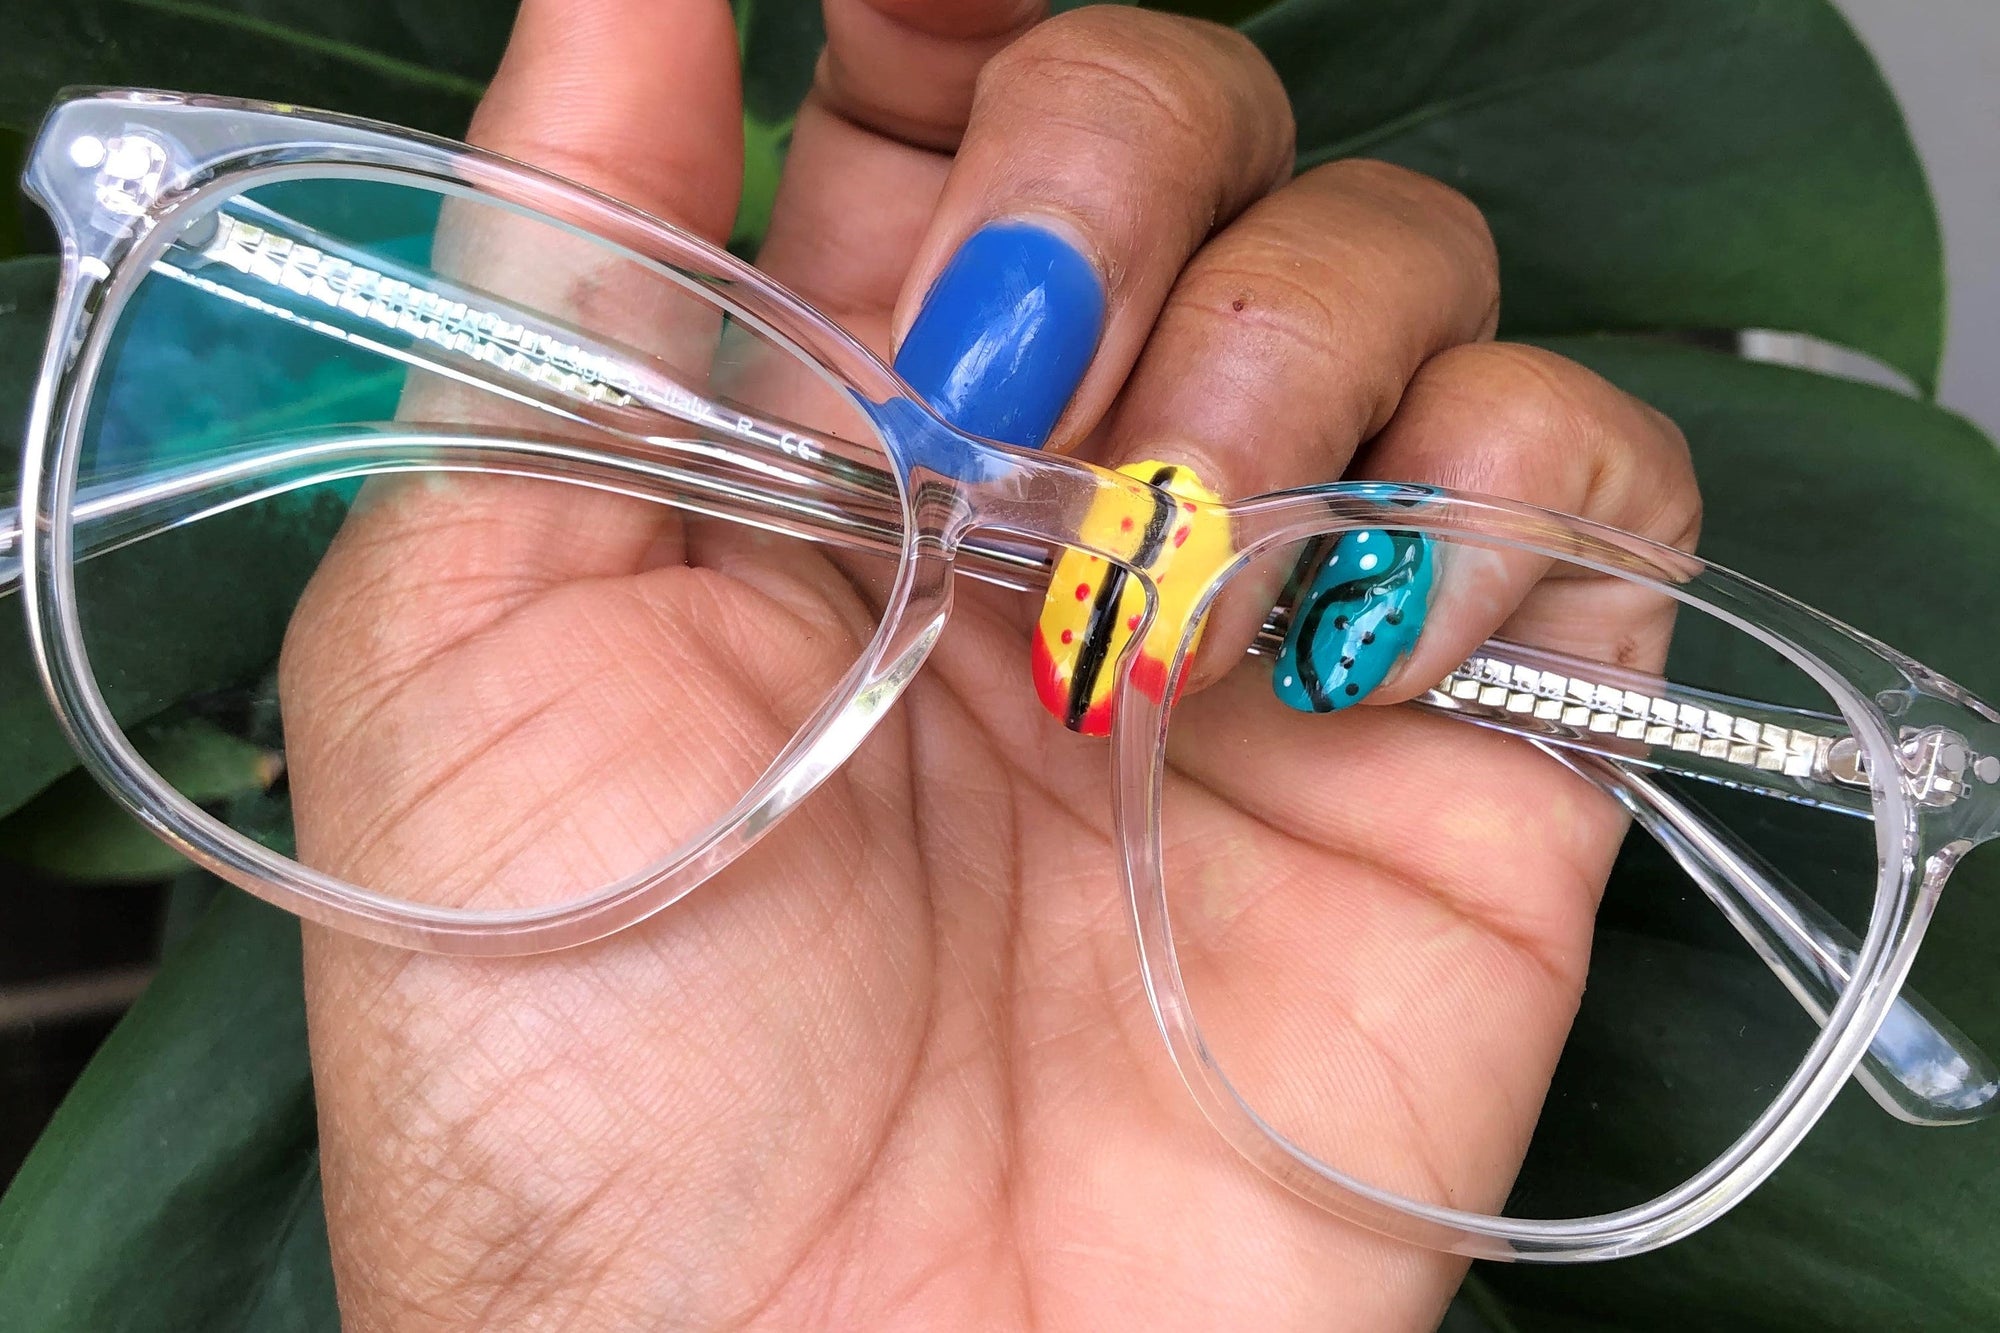 Why Do My Glasses Hurt The Top Of My Ears? | KOALAEYE OPTICAL